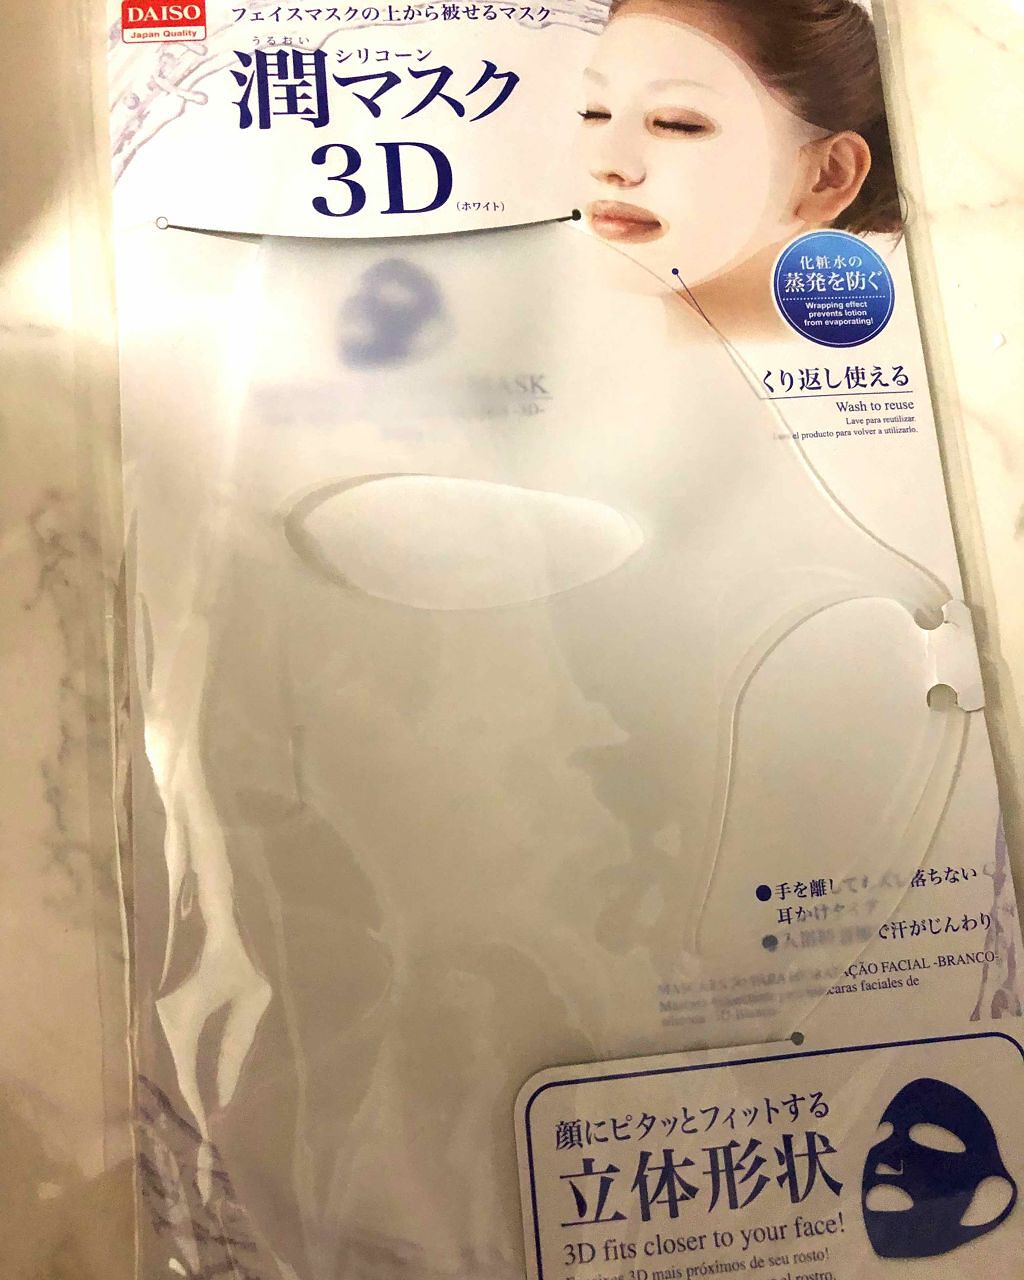 シリコンマスク Daisoの口コミ 今日はダイソー購入品です シリコンマスク By Yuchisuke 混合肌 Lips